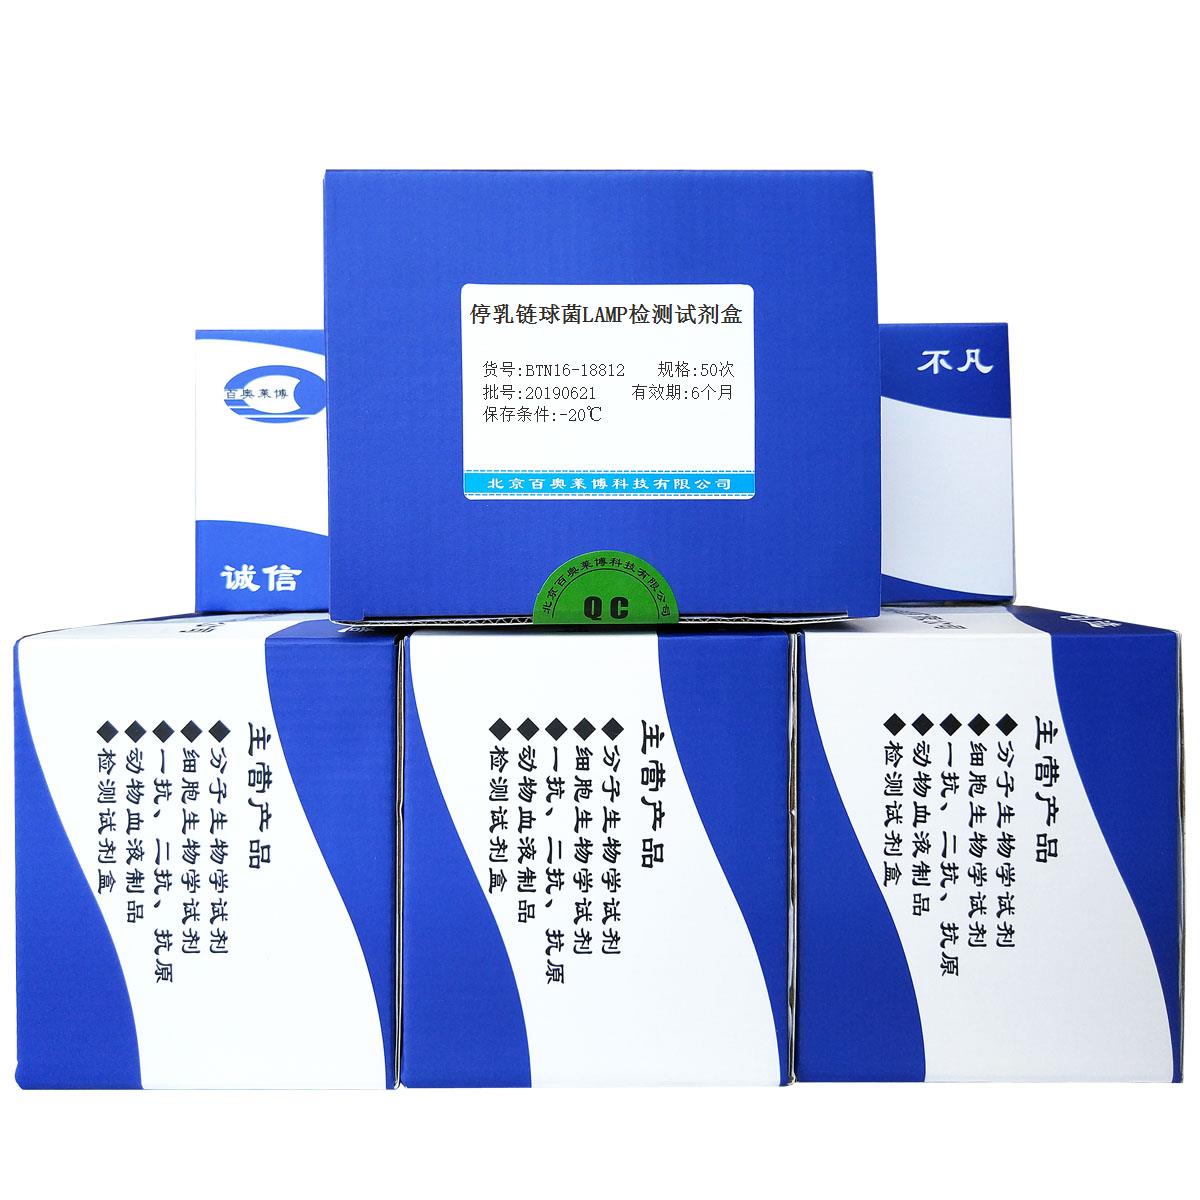 停乳链球菌LAMP检测试剂盒北京厂家